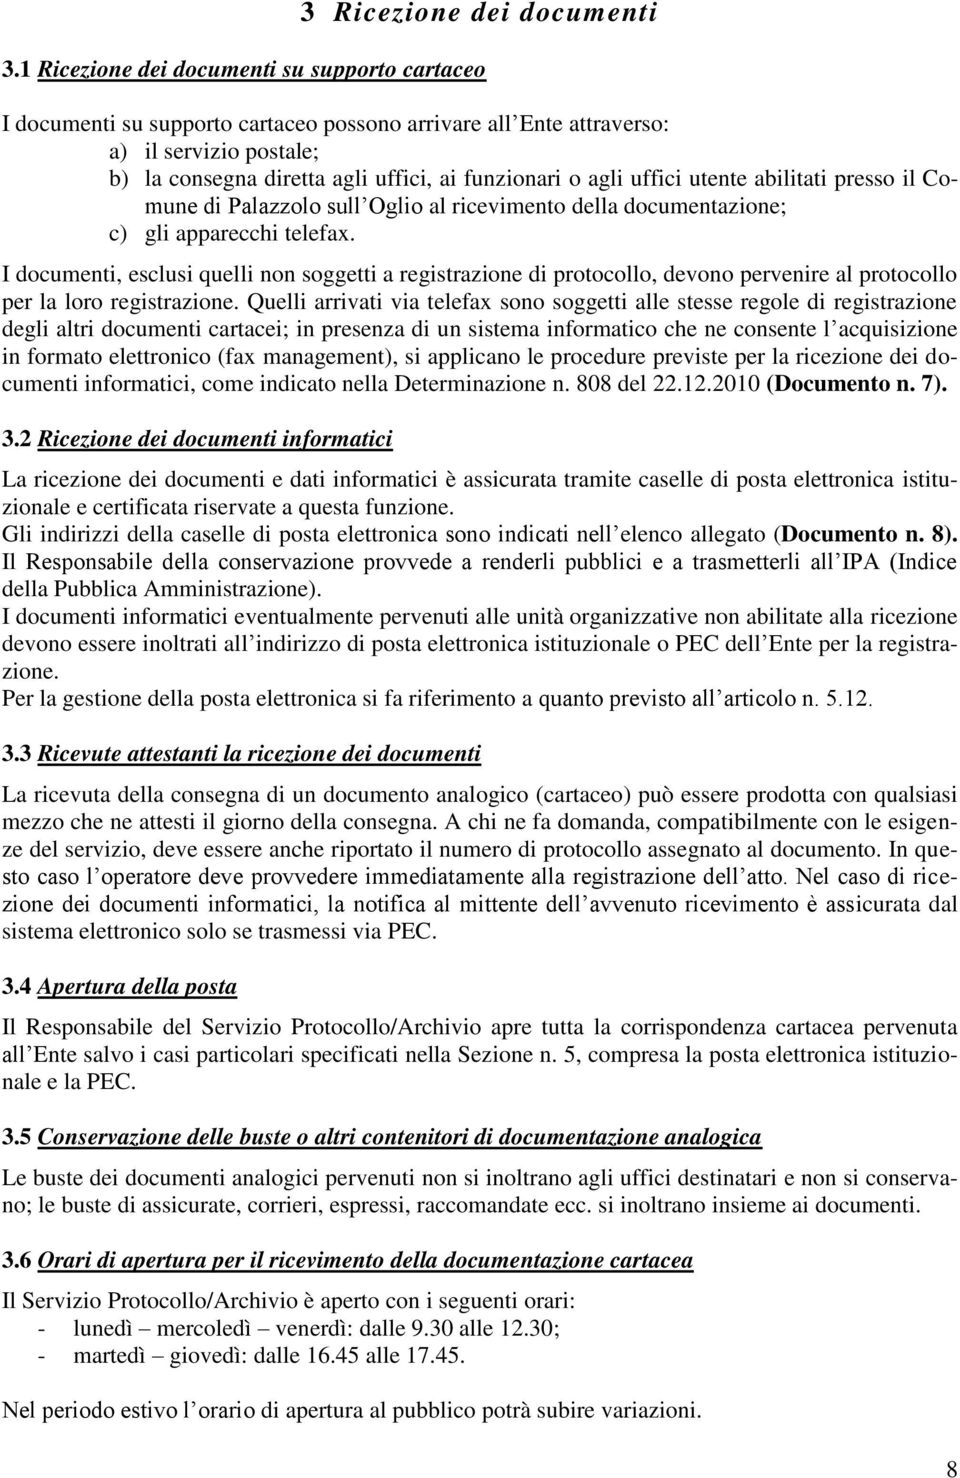 uffici utente abilitati presso il Comune di Palazzolo sull Oglio al ricevimento della documentazione; c) gli apparecchi telefax.